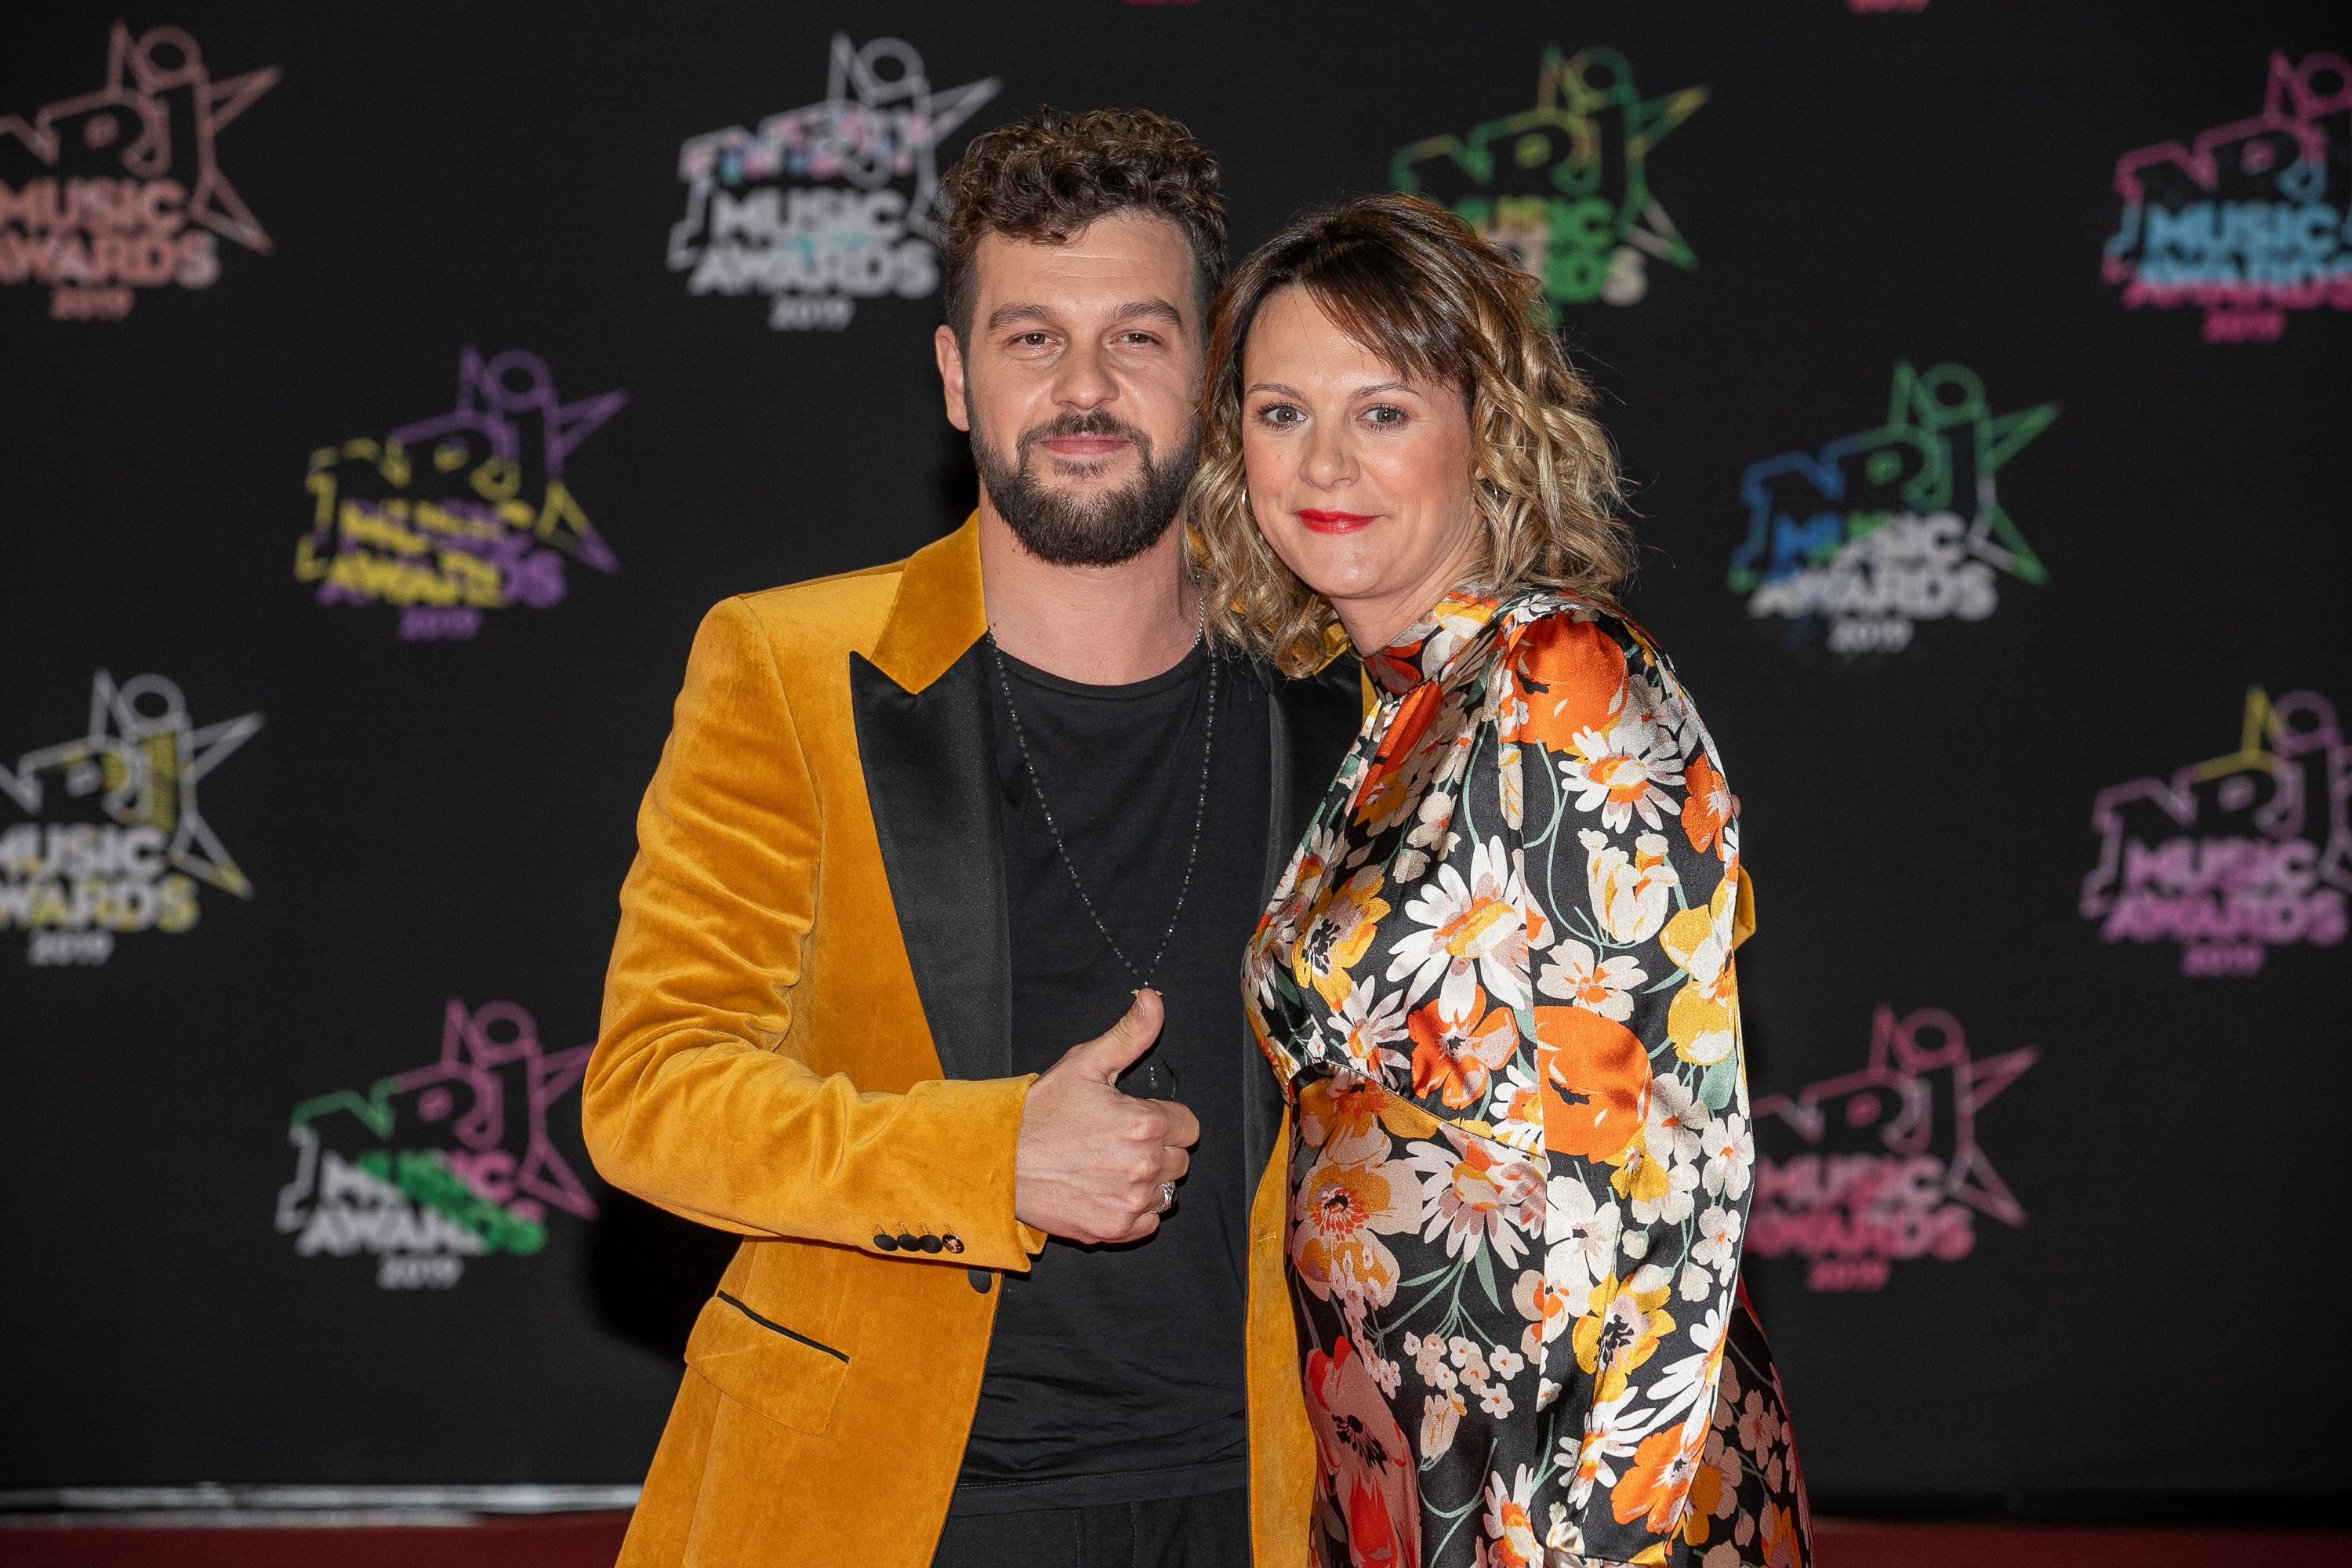 Claudio Capeo et son épouse Aurelie Willgallis, au Palais des Festivals le 09 novembre 2019 à Cannes, France. | Photo : Getty Images